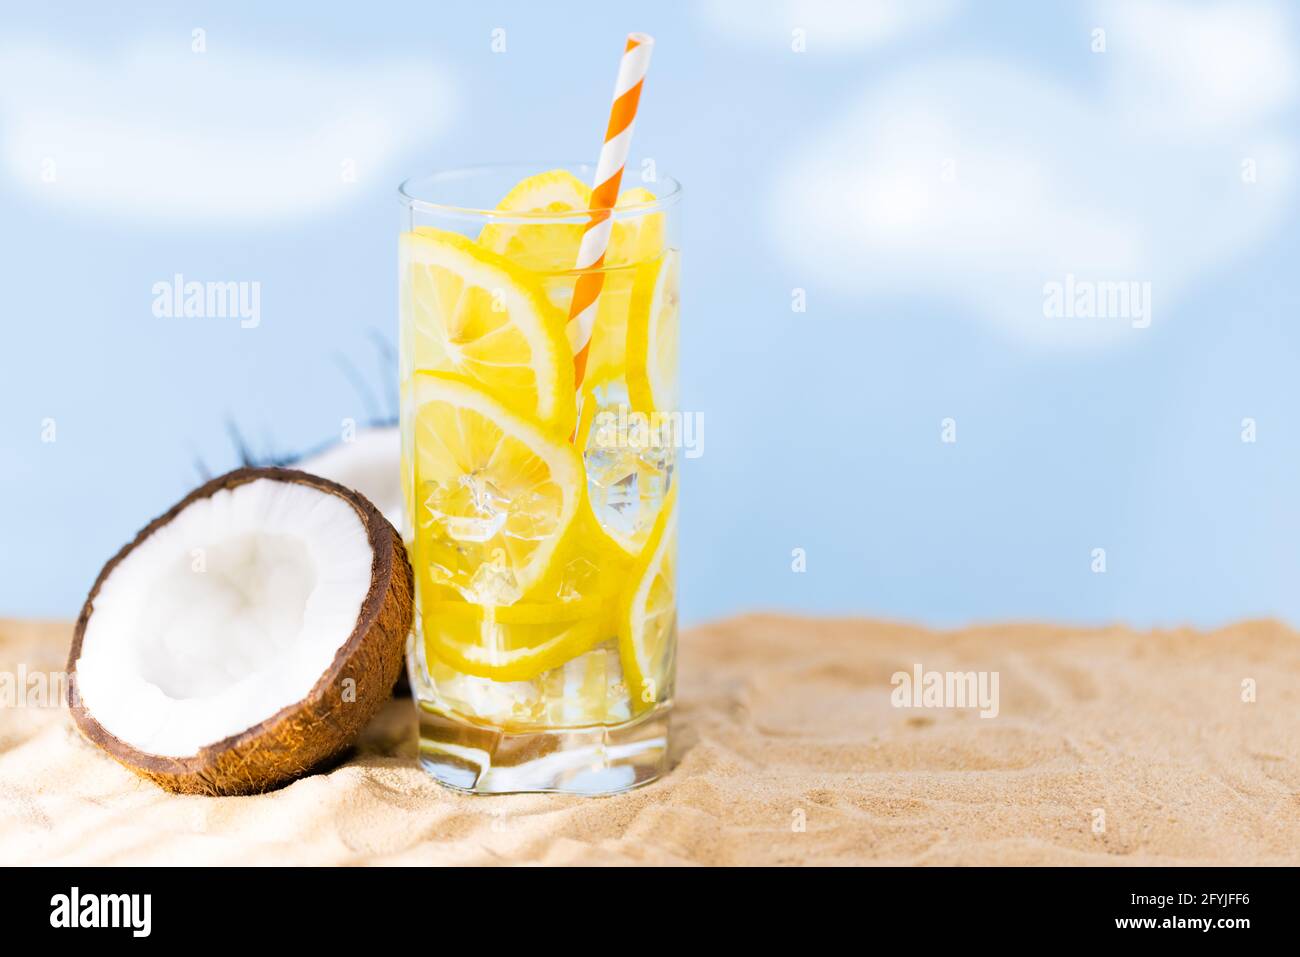 Kokosnuss und Limonade am Sandstrand. Reisen und Strandurlaub. Stockfoto